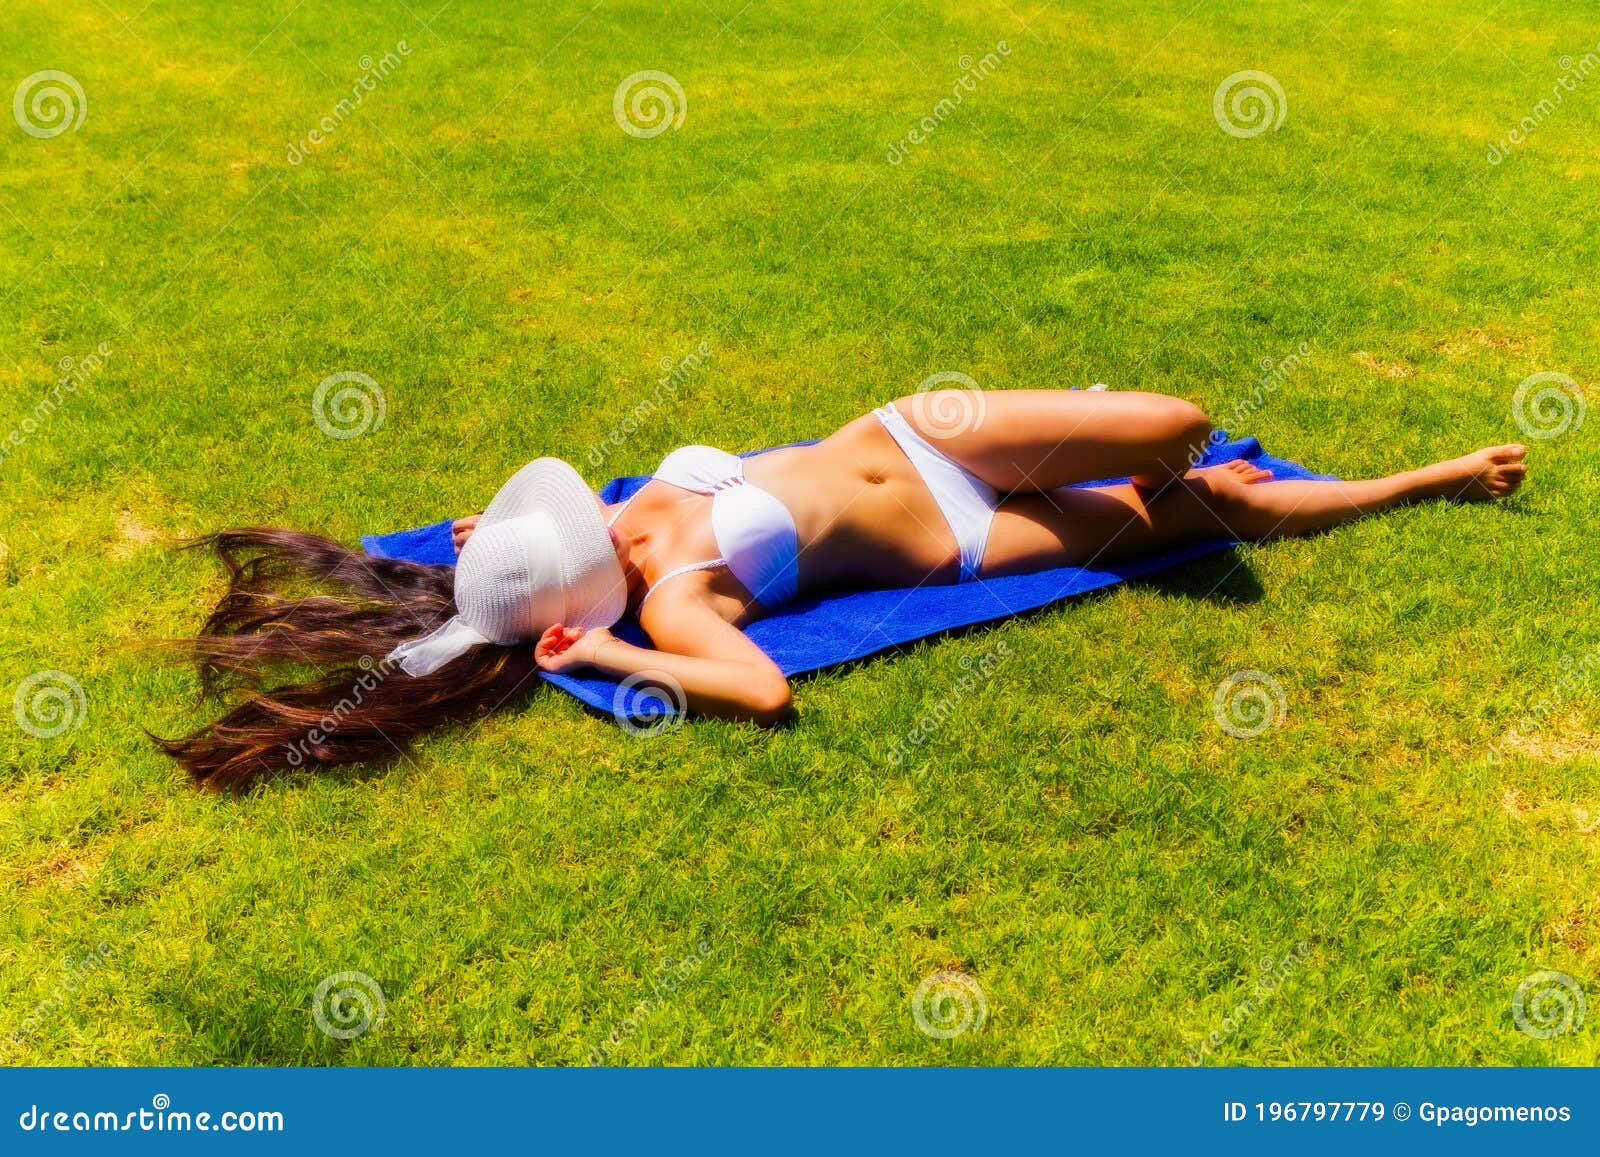 Erotic women in grass wallpapers